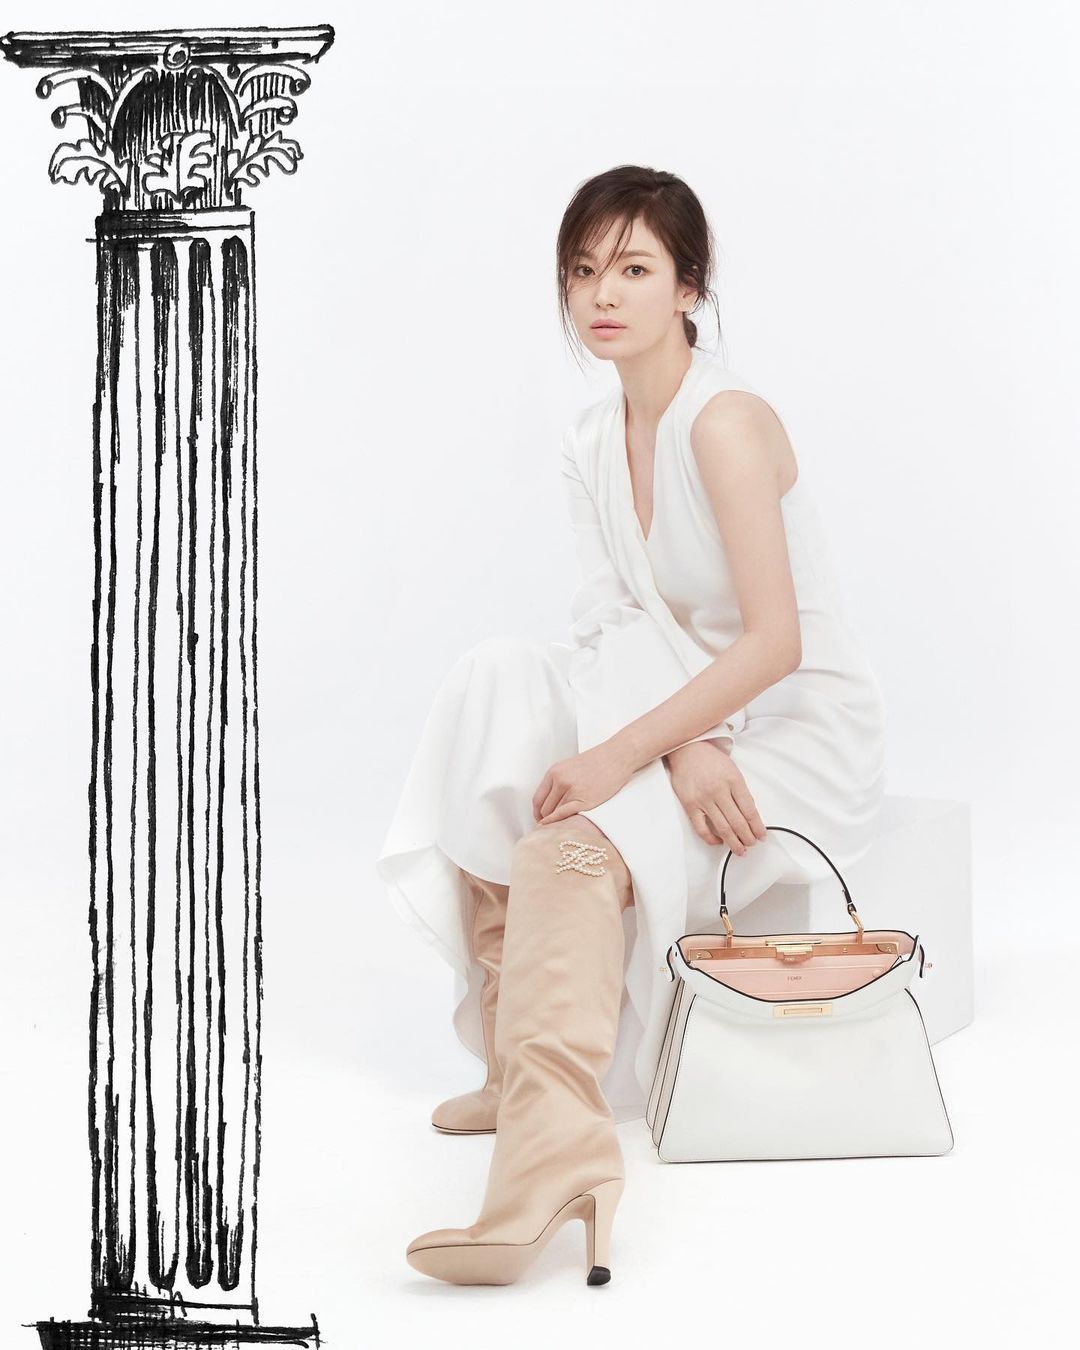 Song Hye Kyo jadi artis Korea pertama yang terpilih menjadi duta Fendi.